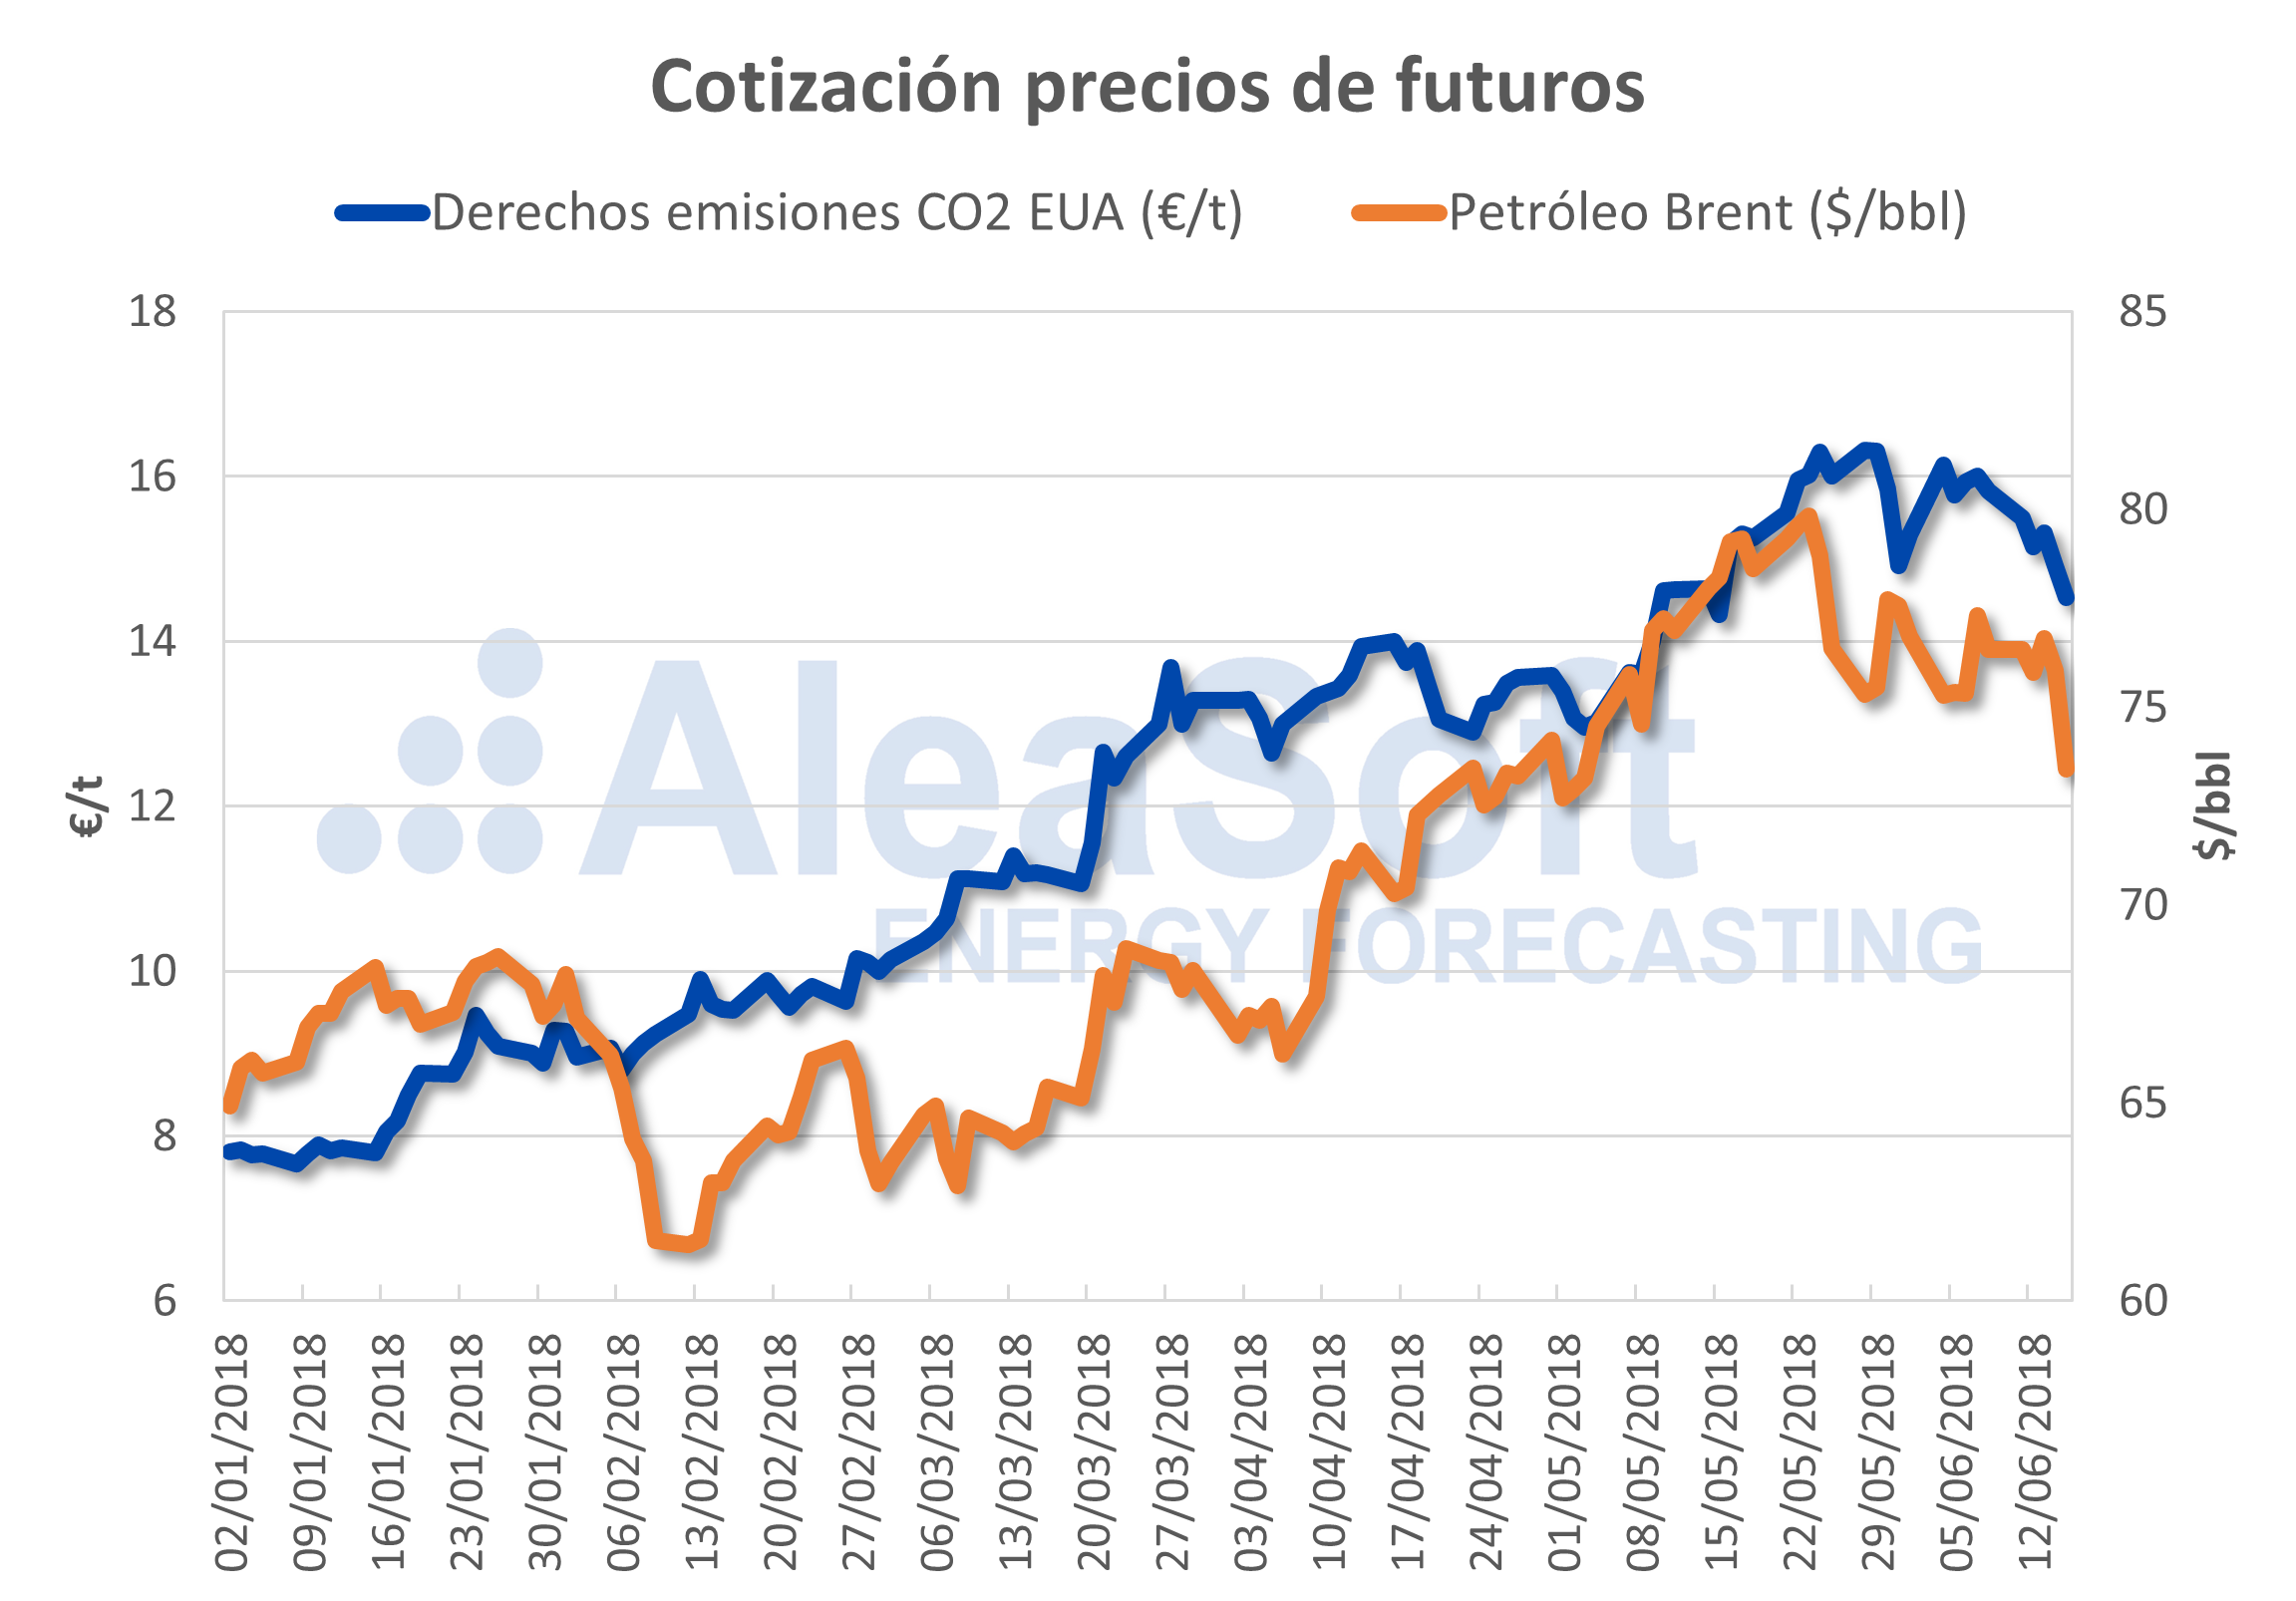 AleaSoft - Cotización precios de futuros